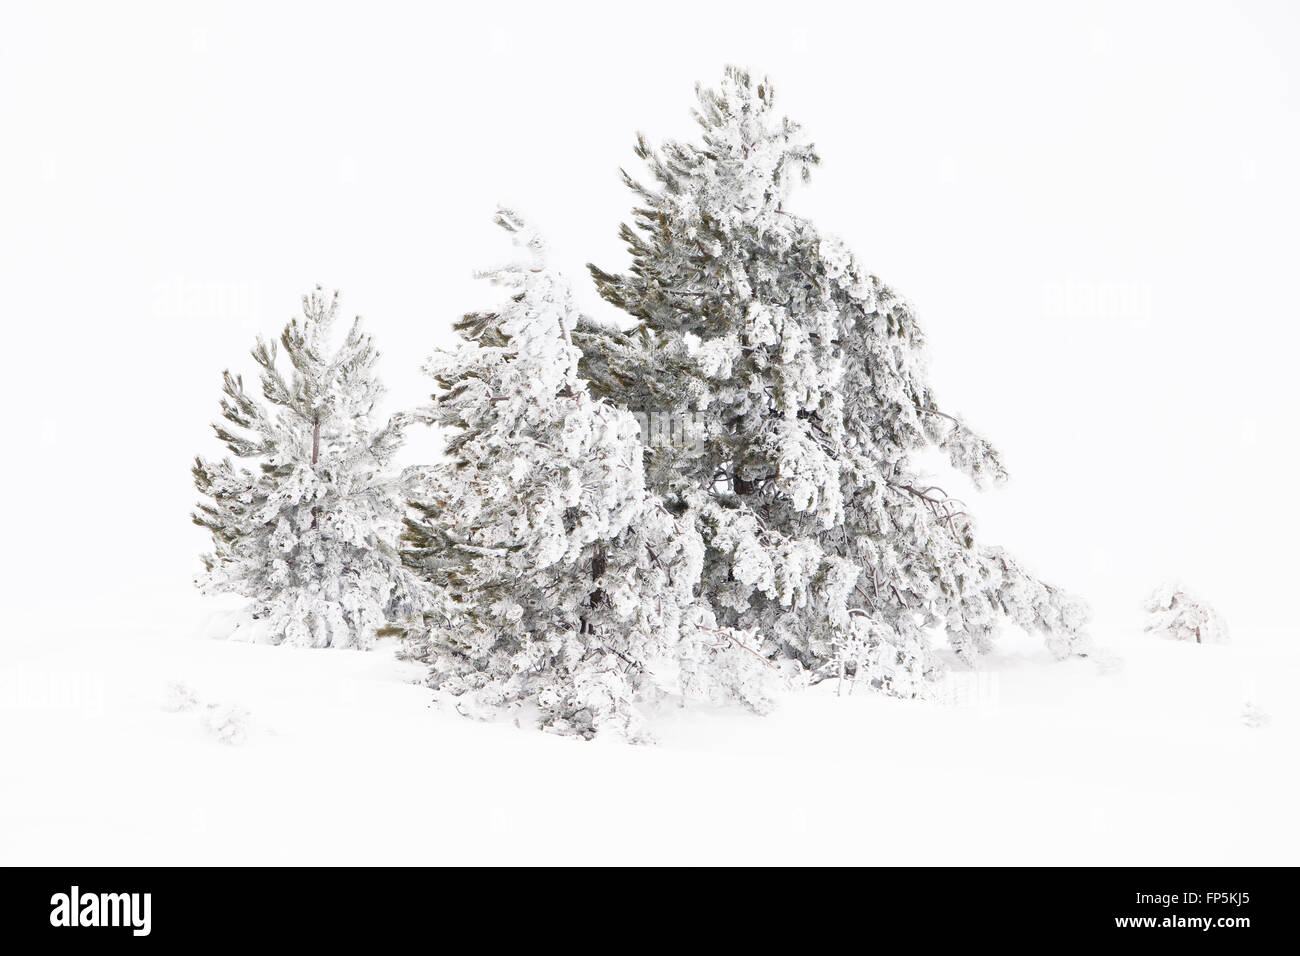 A tree in the blizzard, Campo Imperatore area, Campo Imperatore, Abruzzo, Italy, Italia Stock Photo